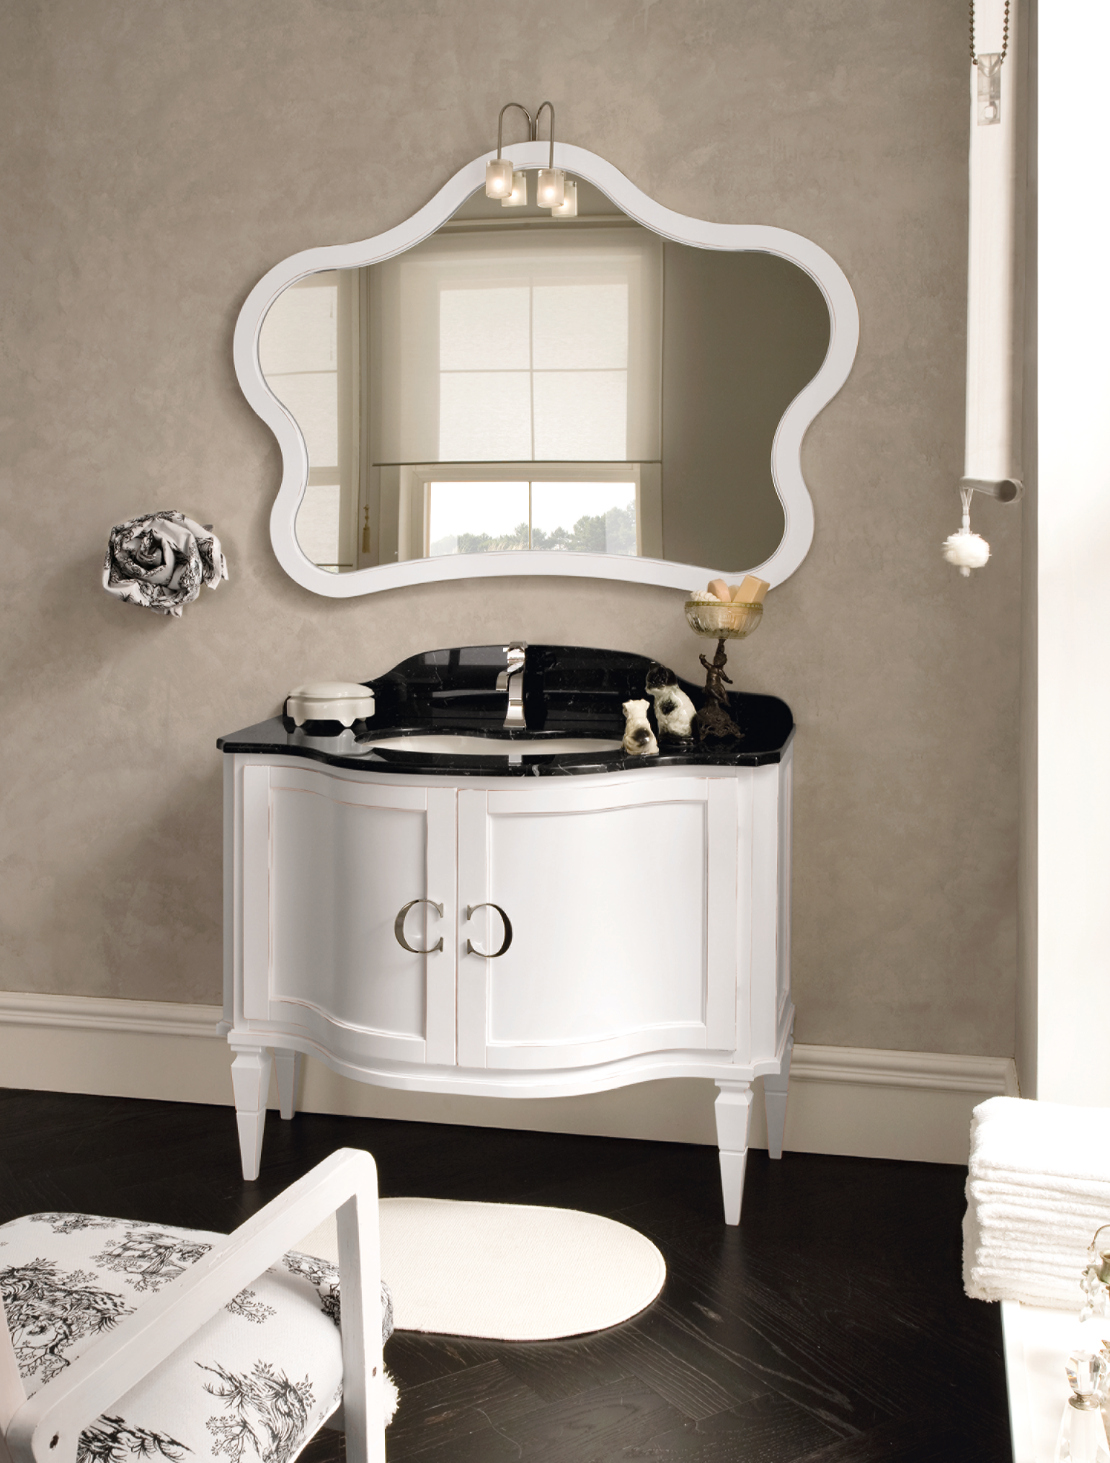 bagno classico raffinato - contrasto fra piano marmo nero e base bianca sagomata - maniglia con logo